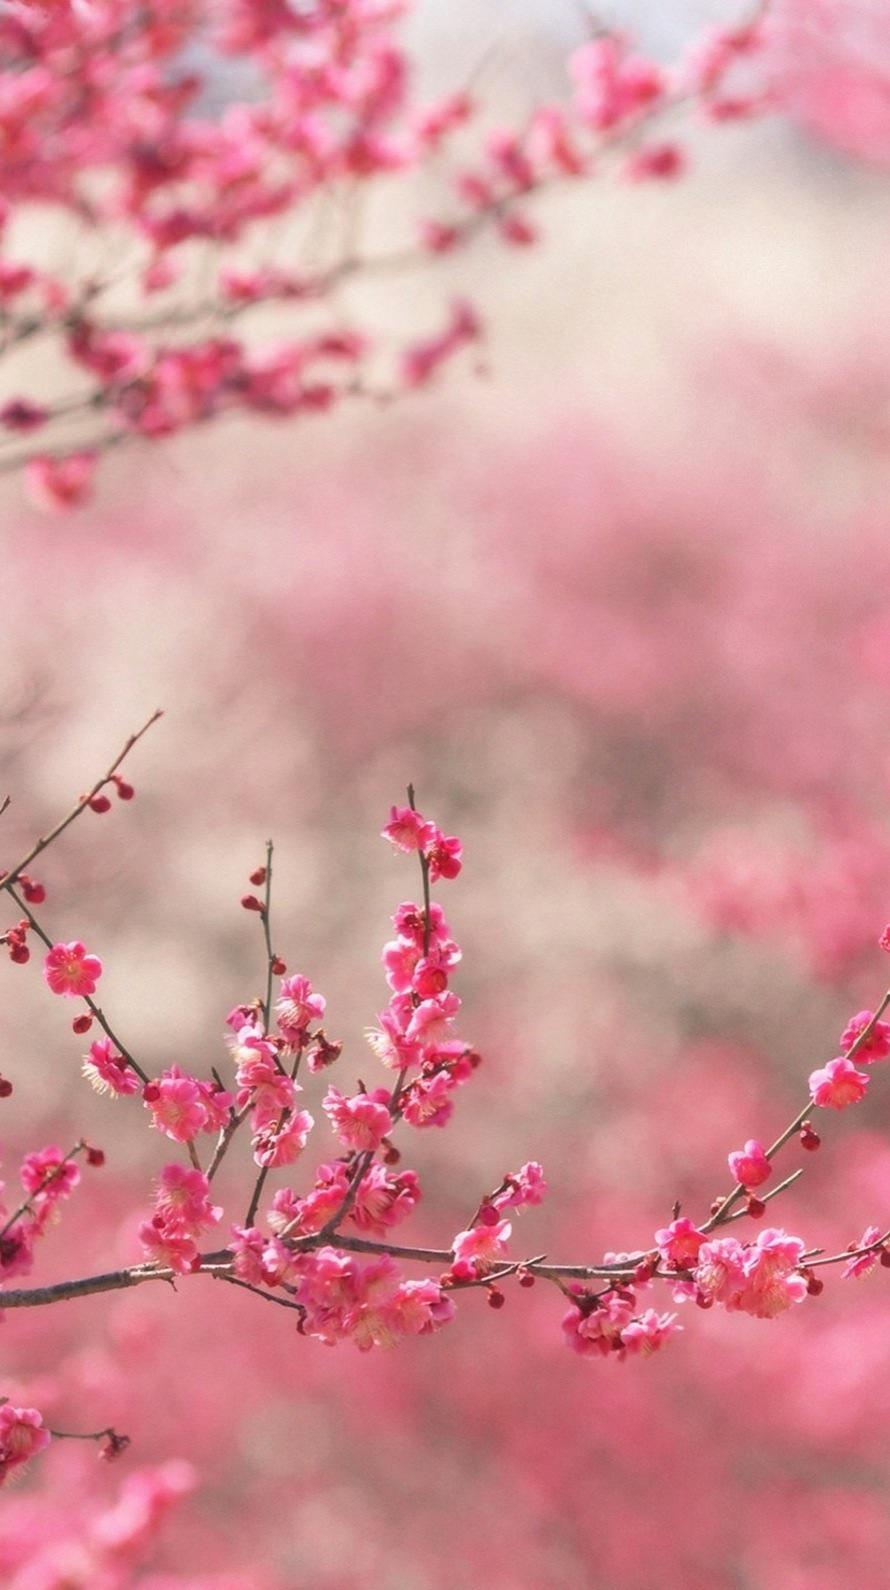 والپیپر فوق العاده قشنگ از شکوفه های ریز و صورتی 